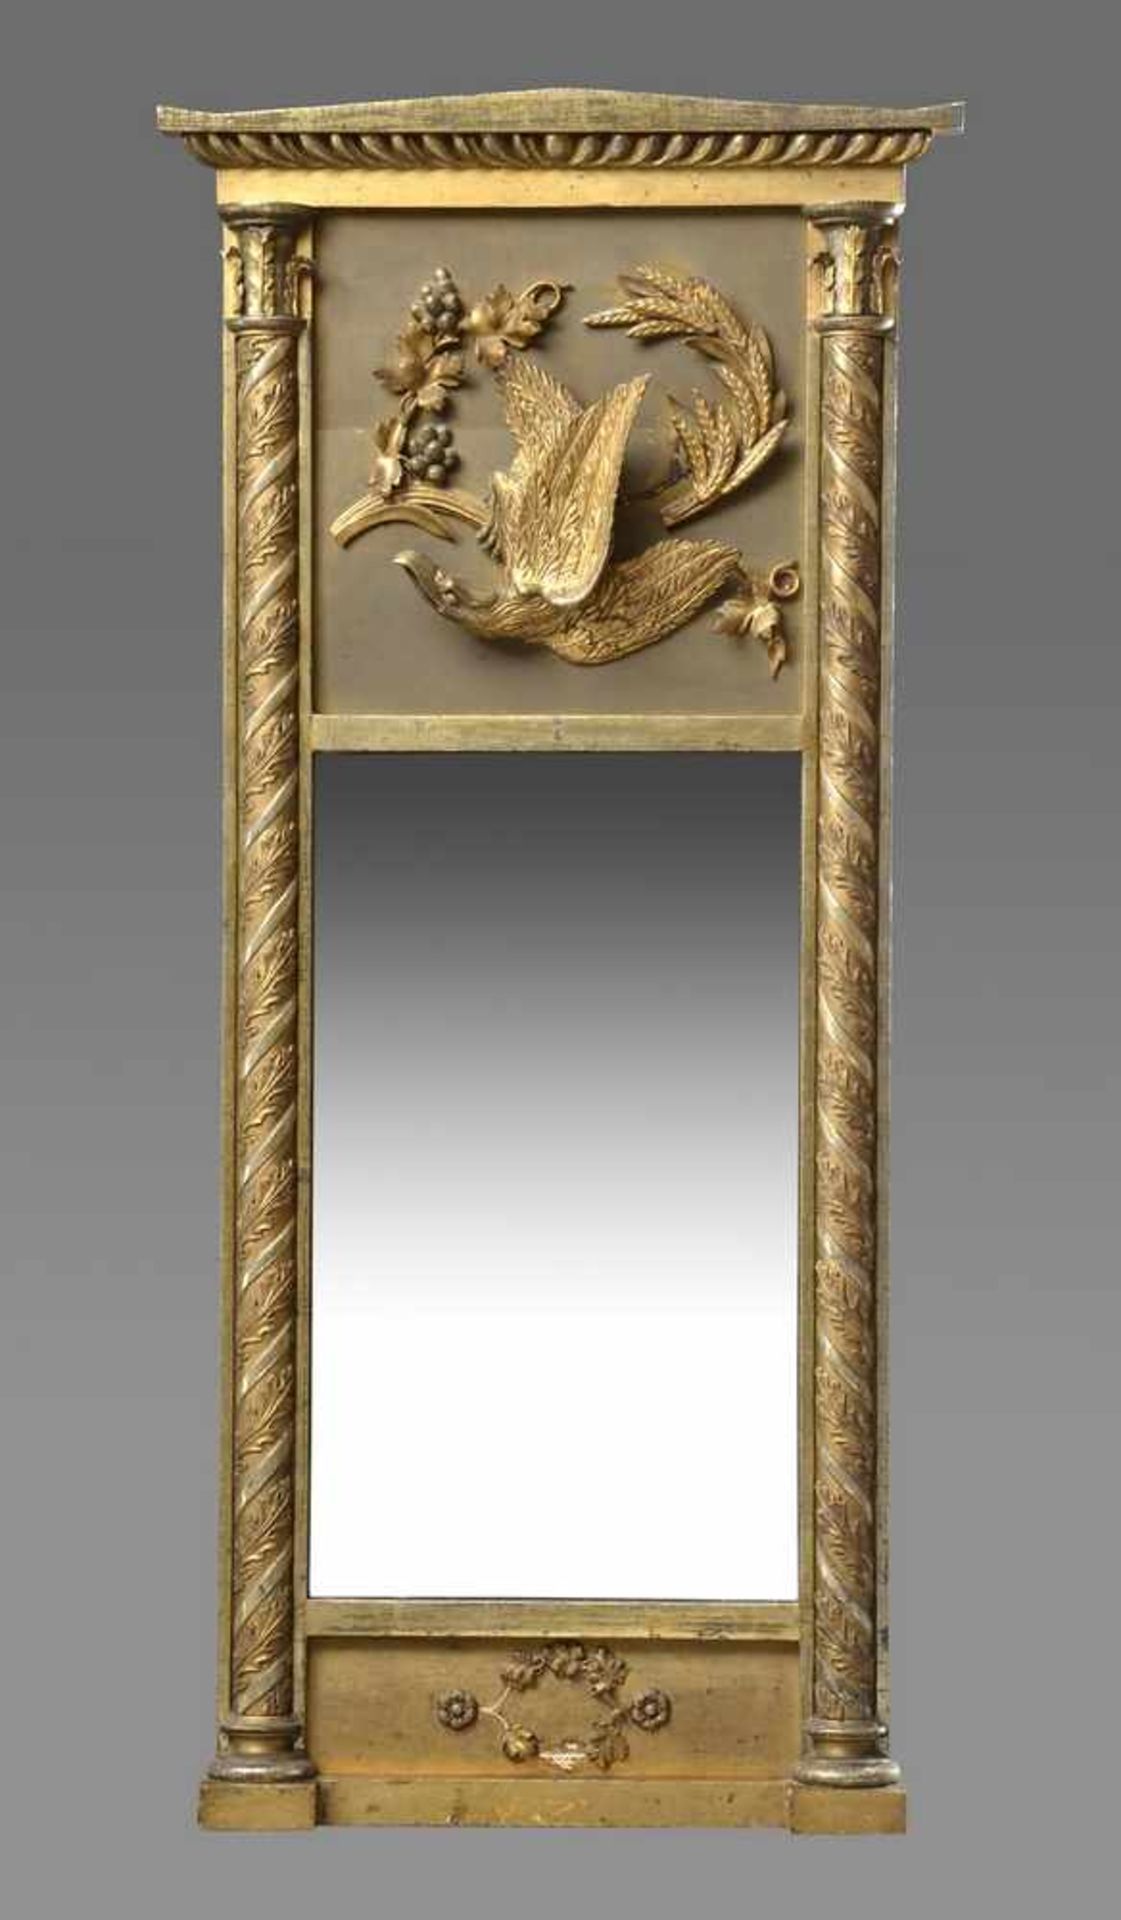 Vergoldeter Empire Spiegel mit plastischem "Adler" und seitlichen Halbsäulen, 138x64cm, Fehlstellen